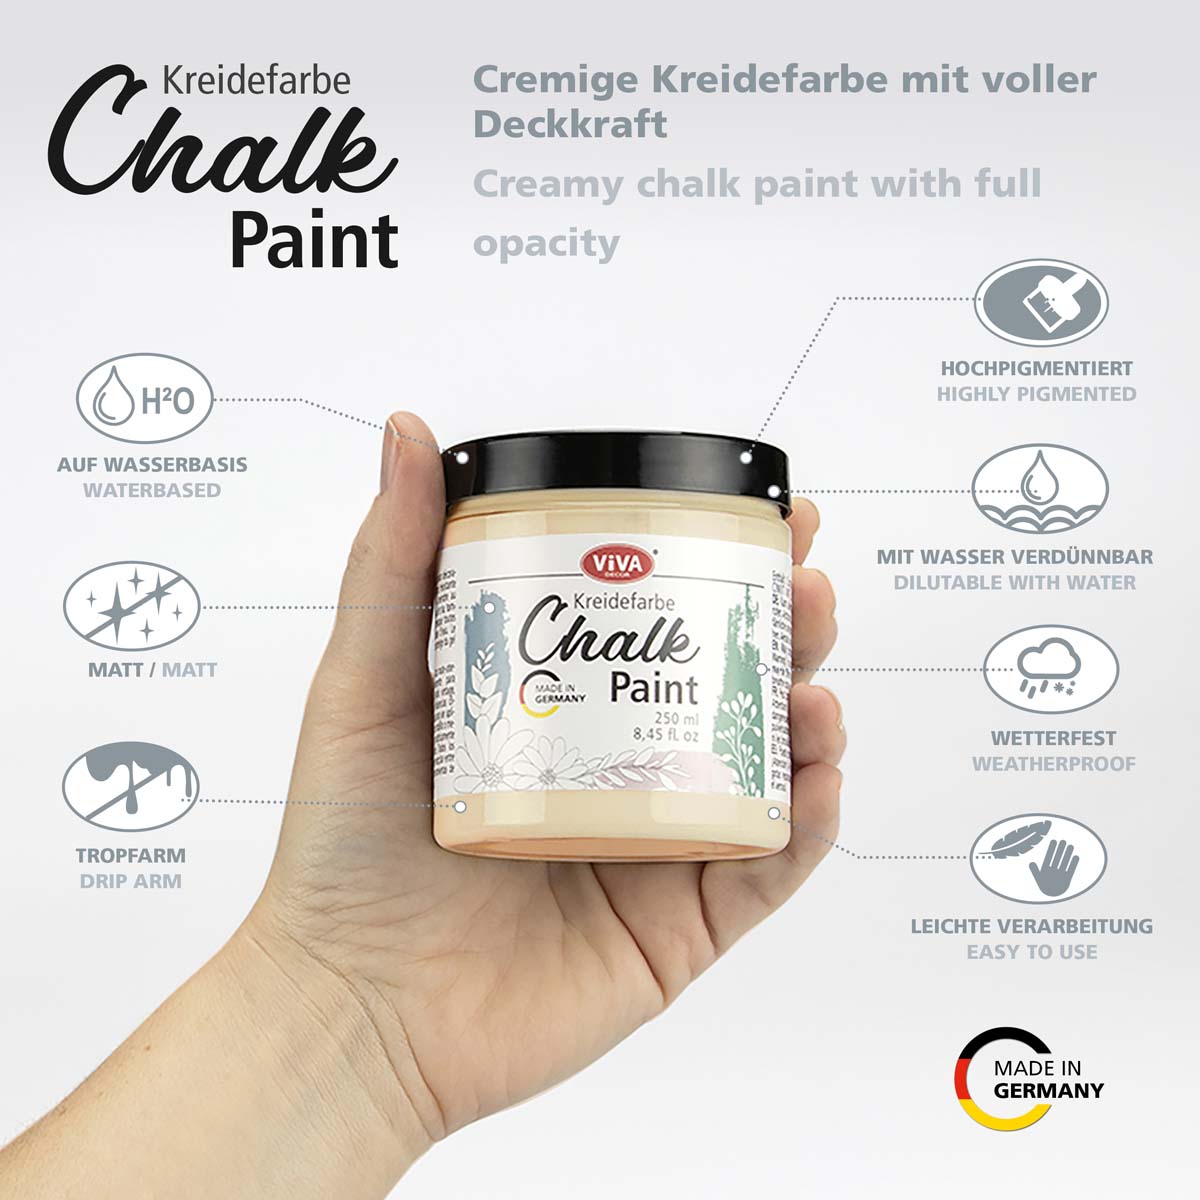 Chalk Paint__Pfirsich Melba_Vorteile